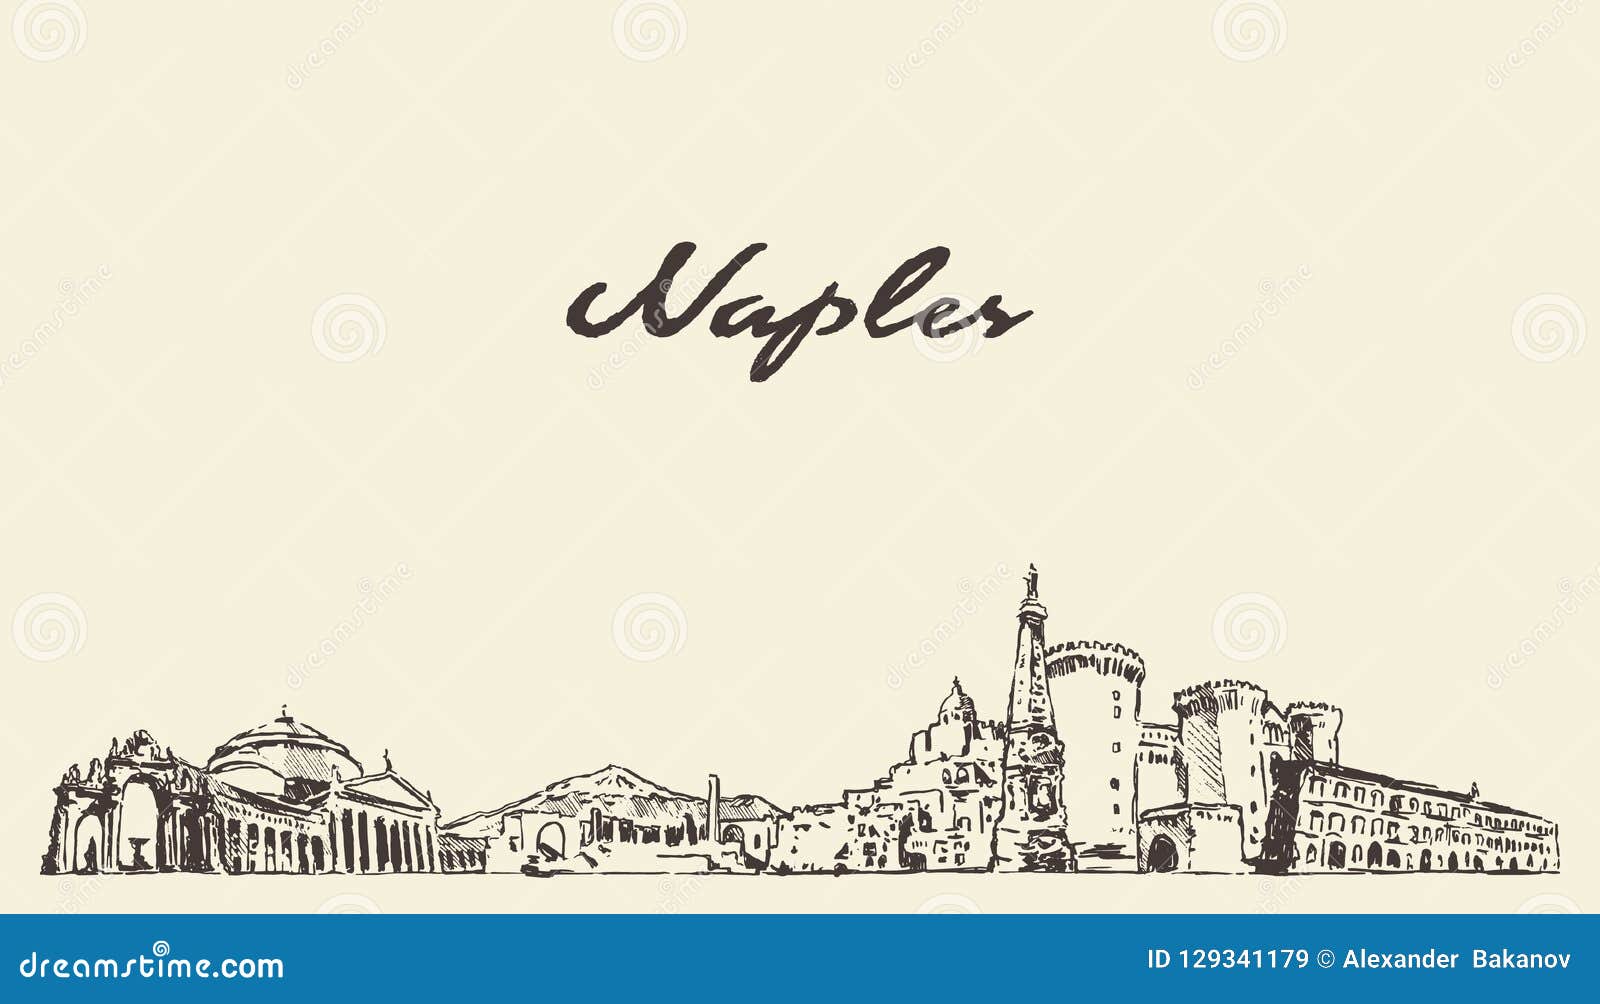 naples skyline, italy  city drawn sketch